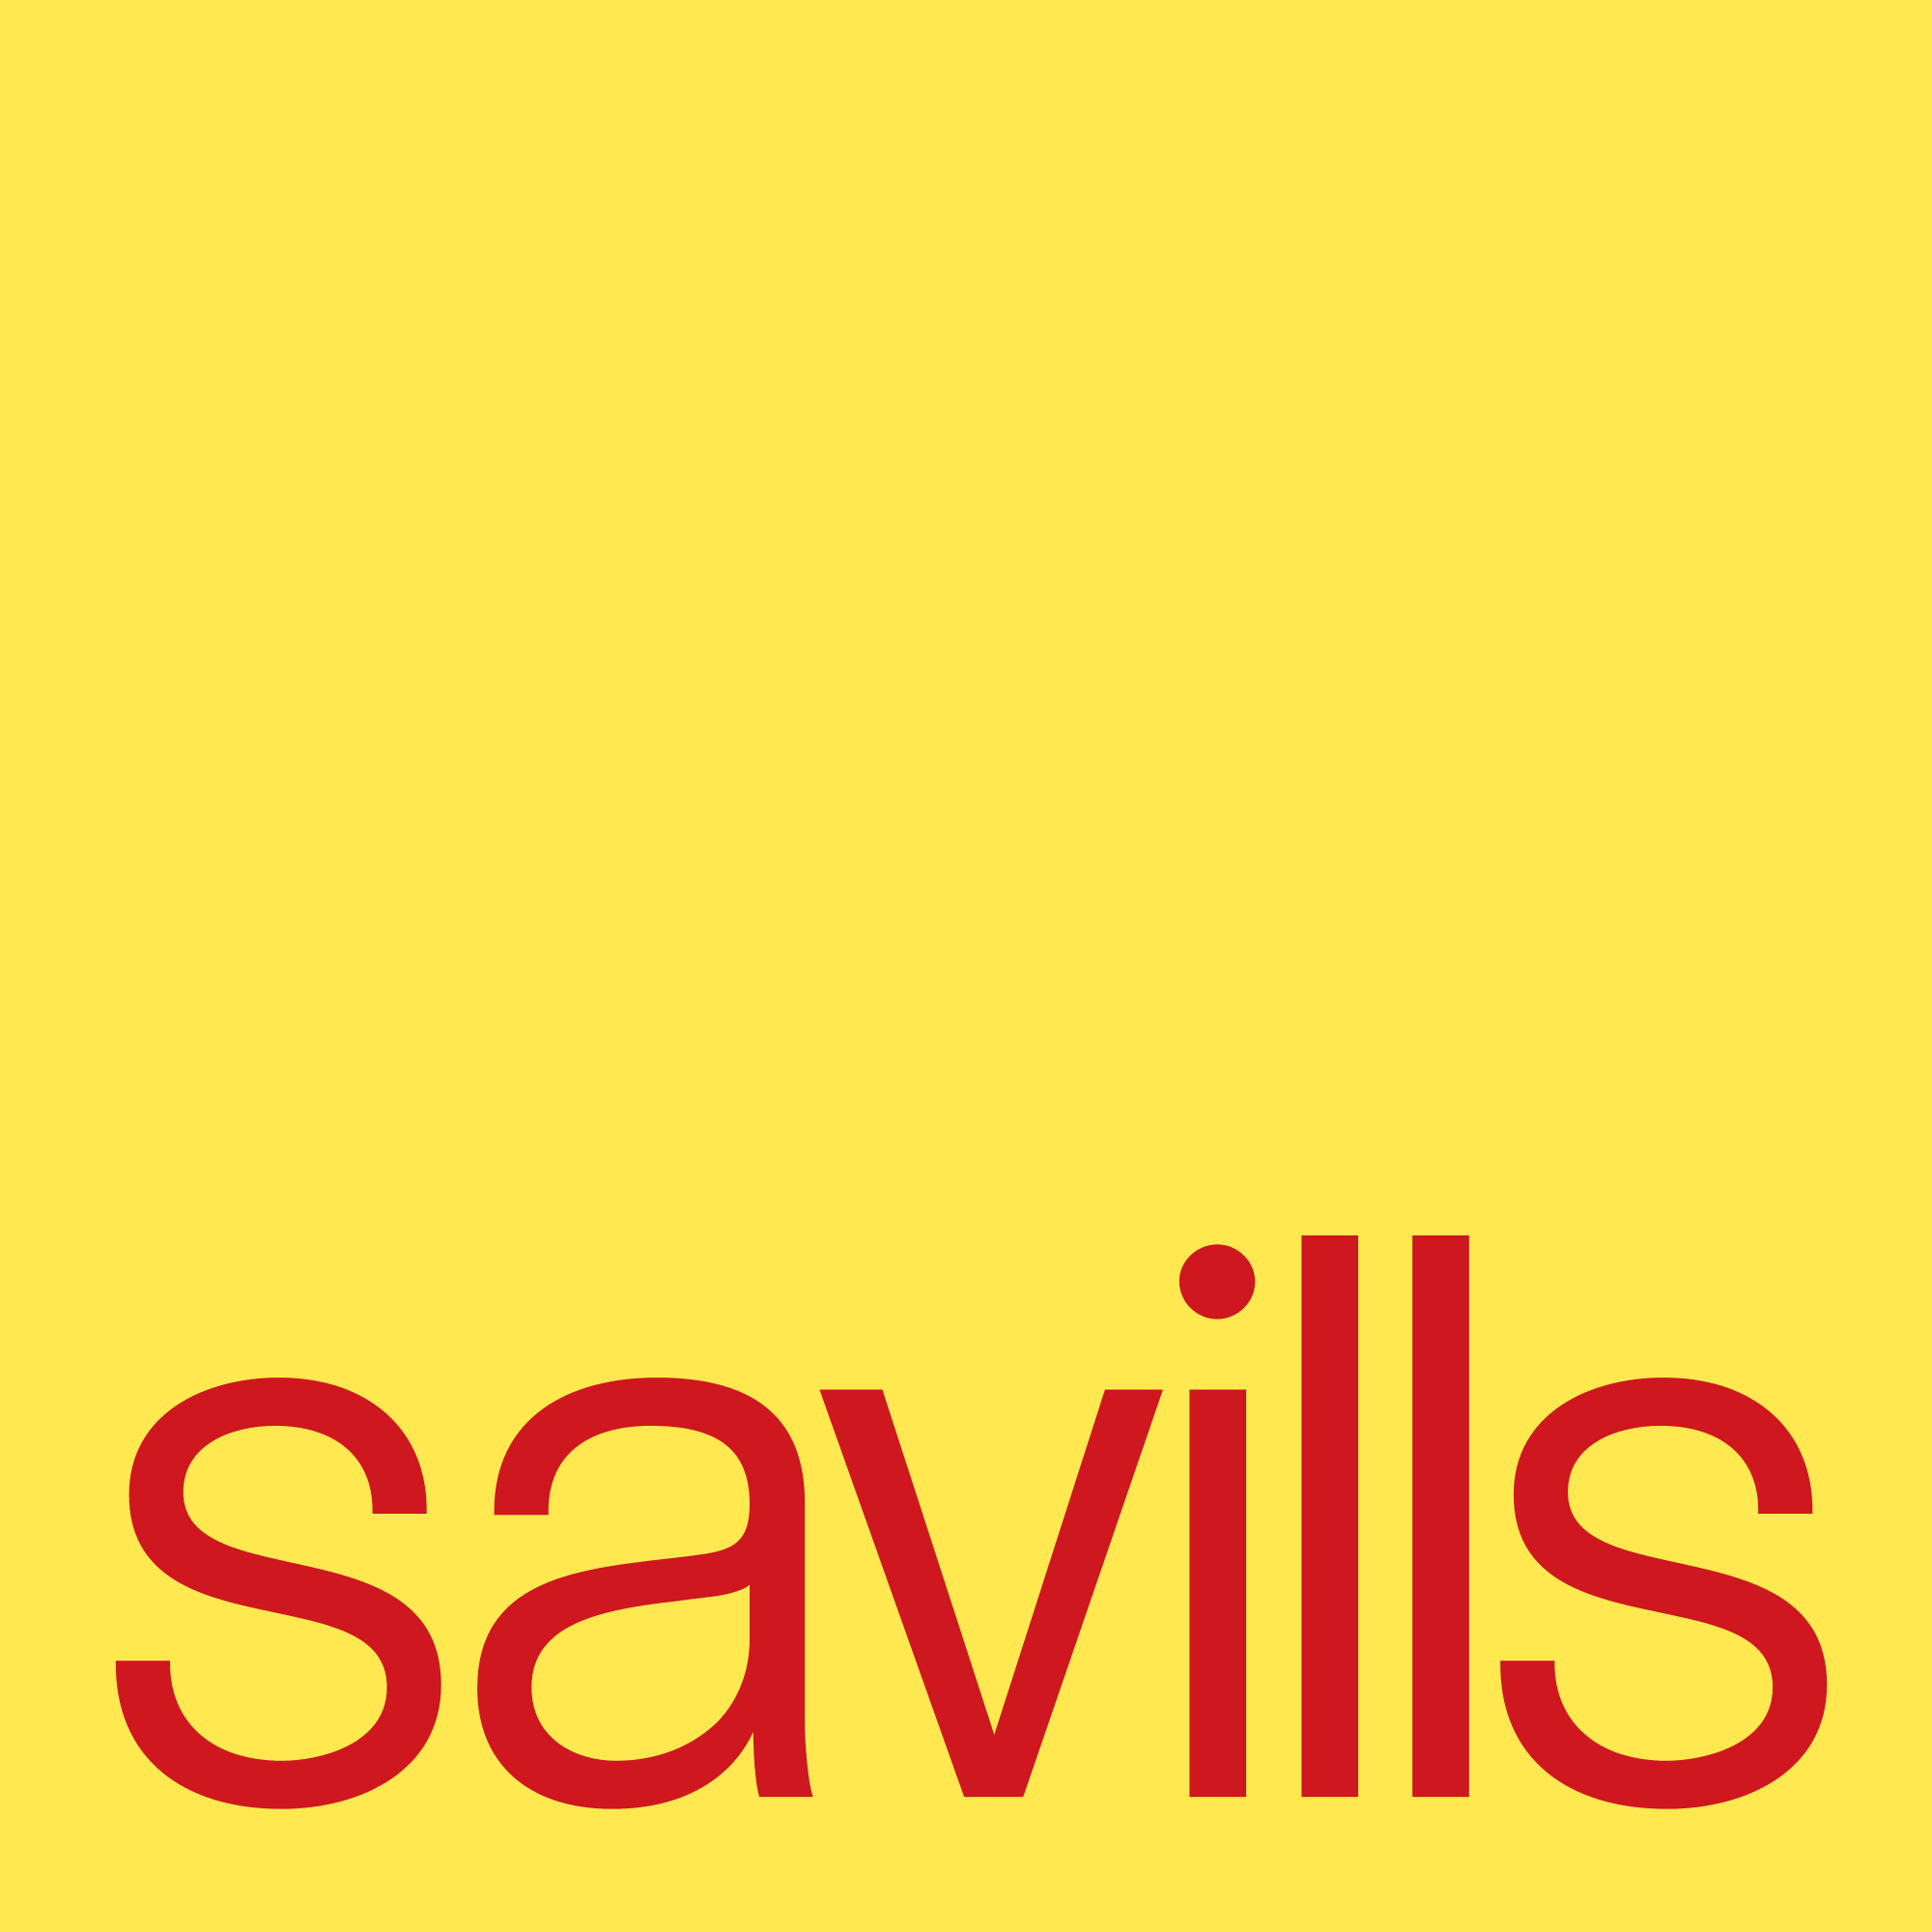 An image of the Savills logo